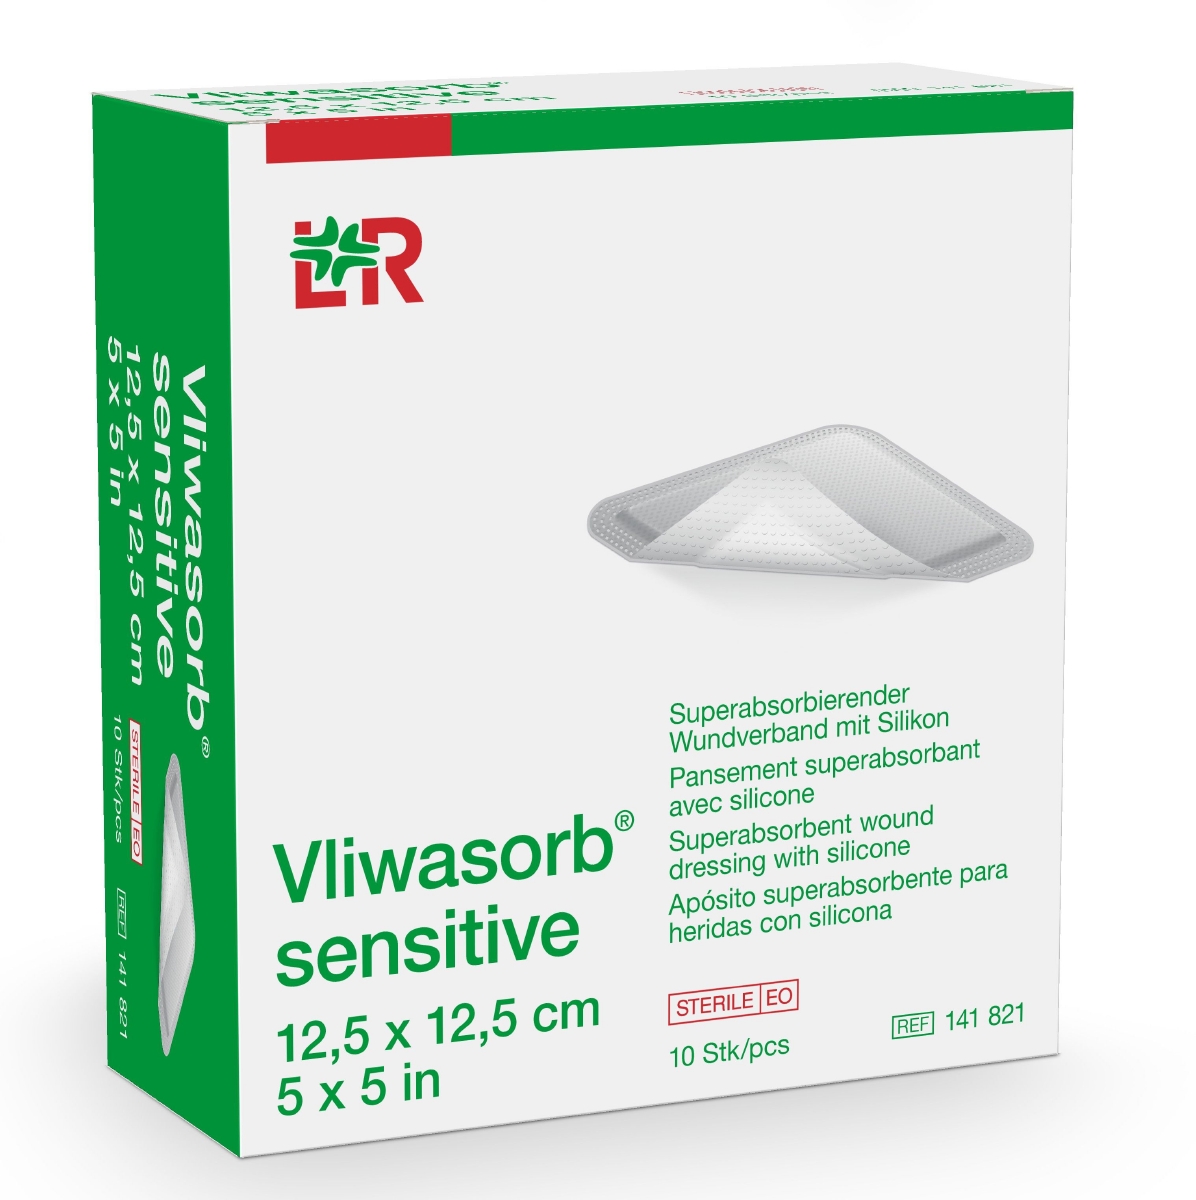 Vliwasorb® sensitive superabsorbierender Wundverband 12,5 cm x 12,5 cm